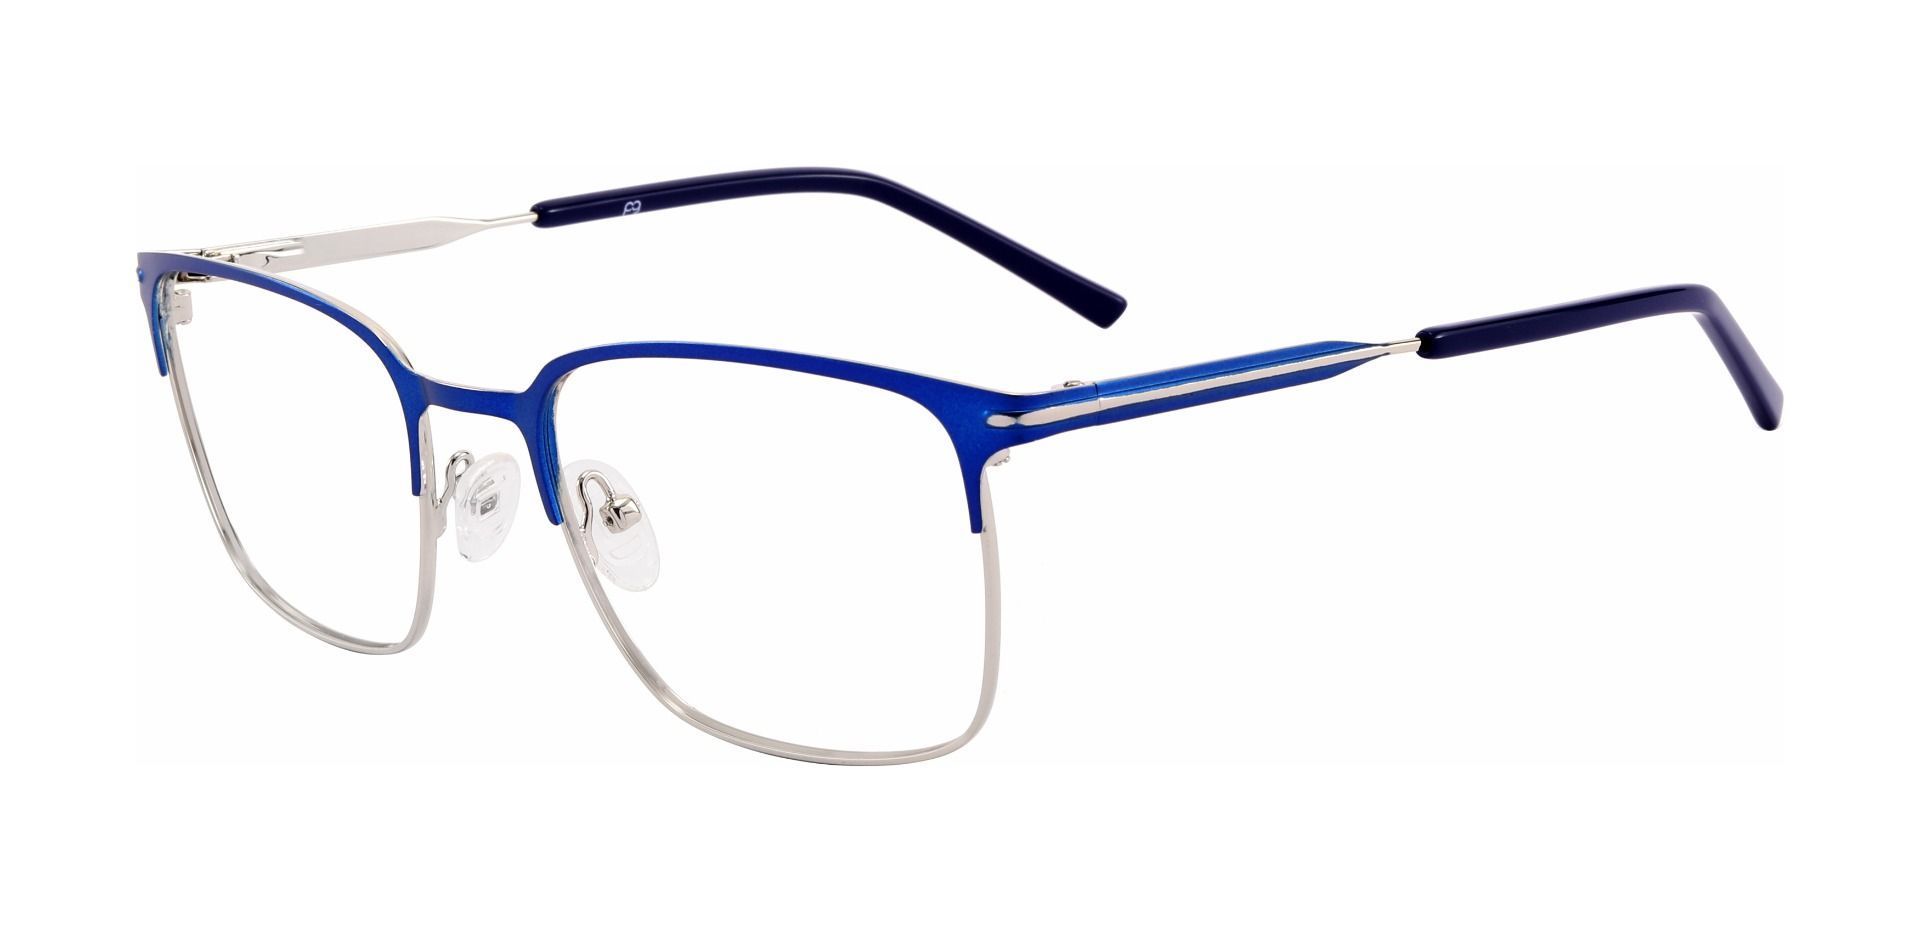 Rucker Rectangle Reading Glasses - Blue